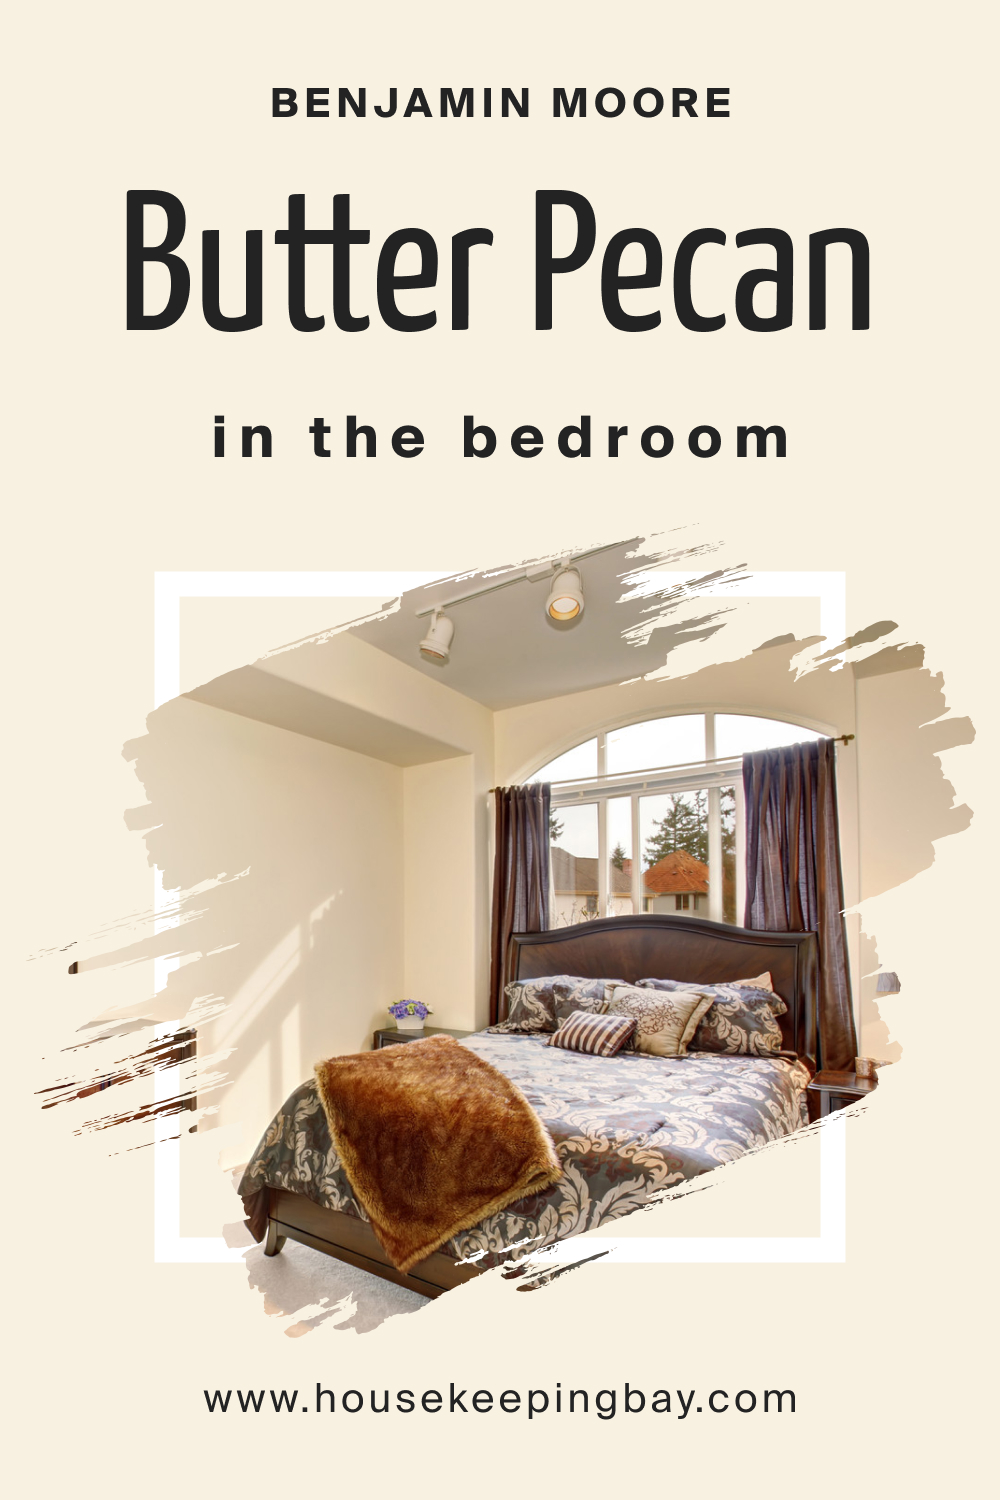 Benjamin Moore. Butter Pecan OC 89 for the Bedroom